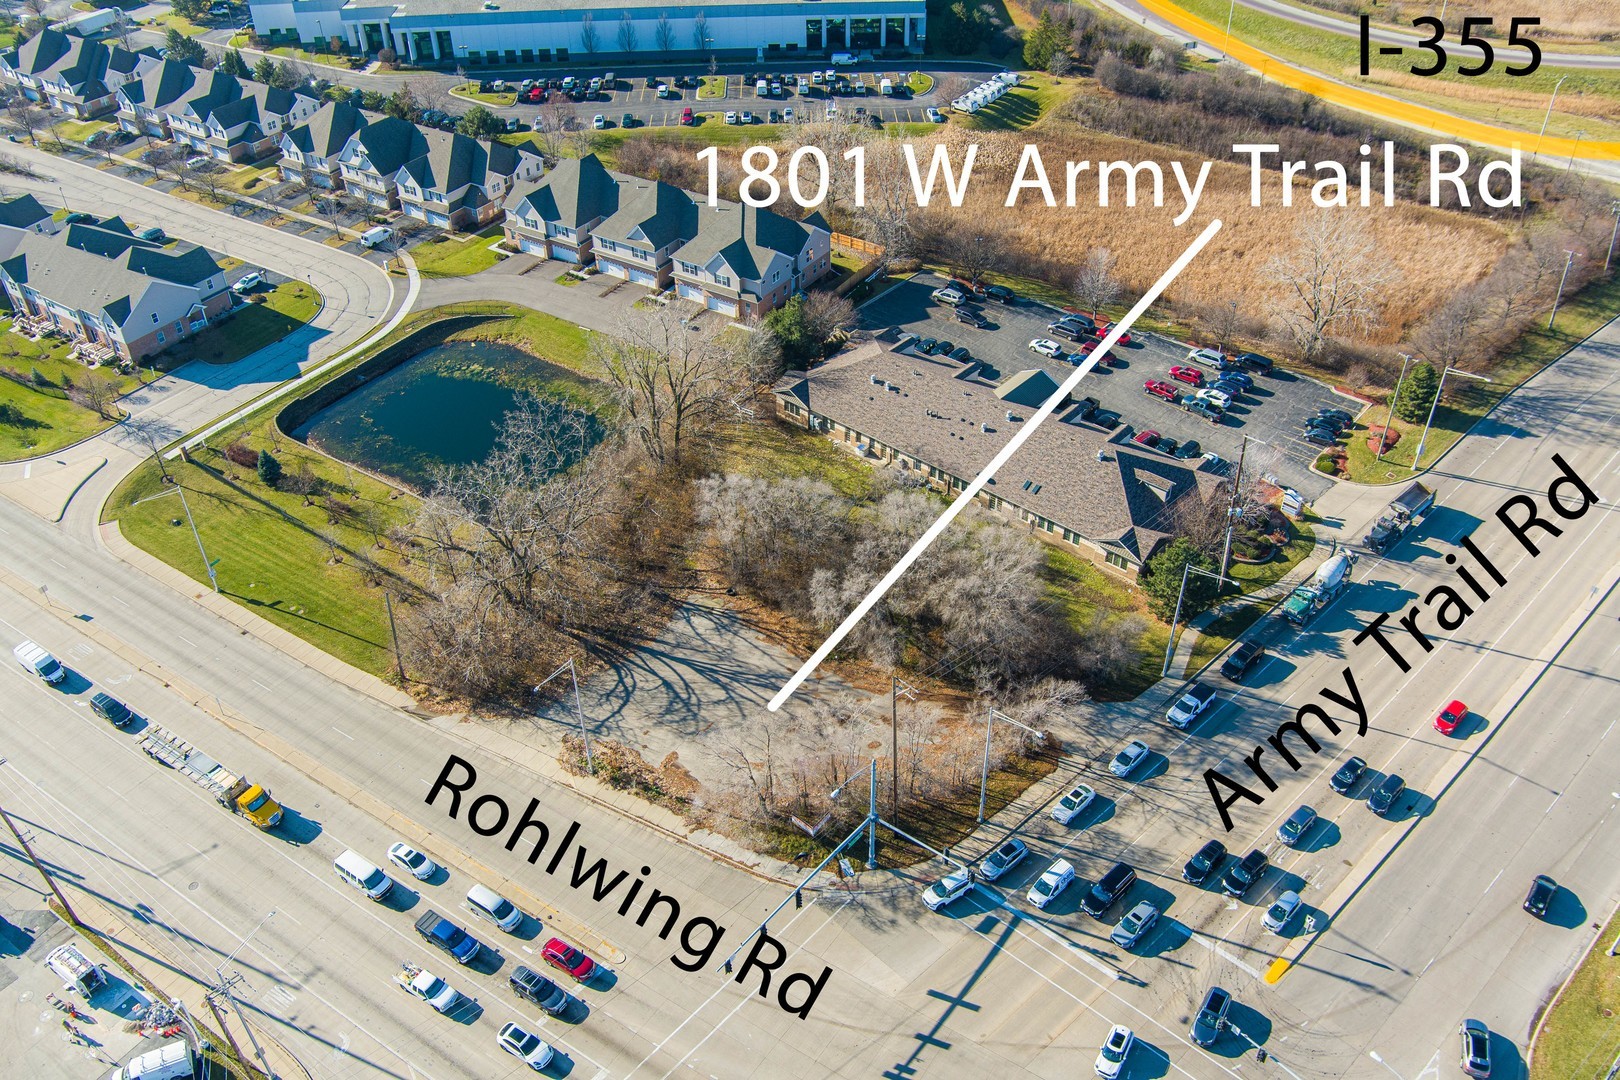 6. 1801 W Army Trail Road